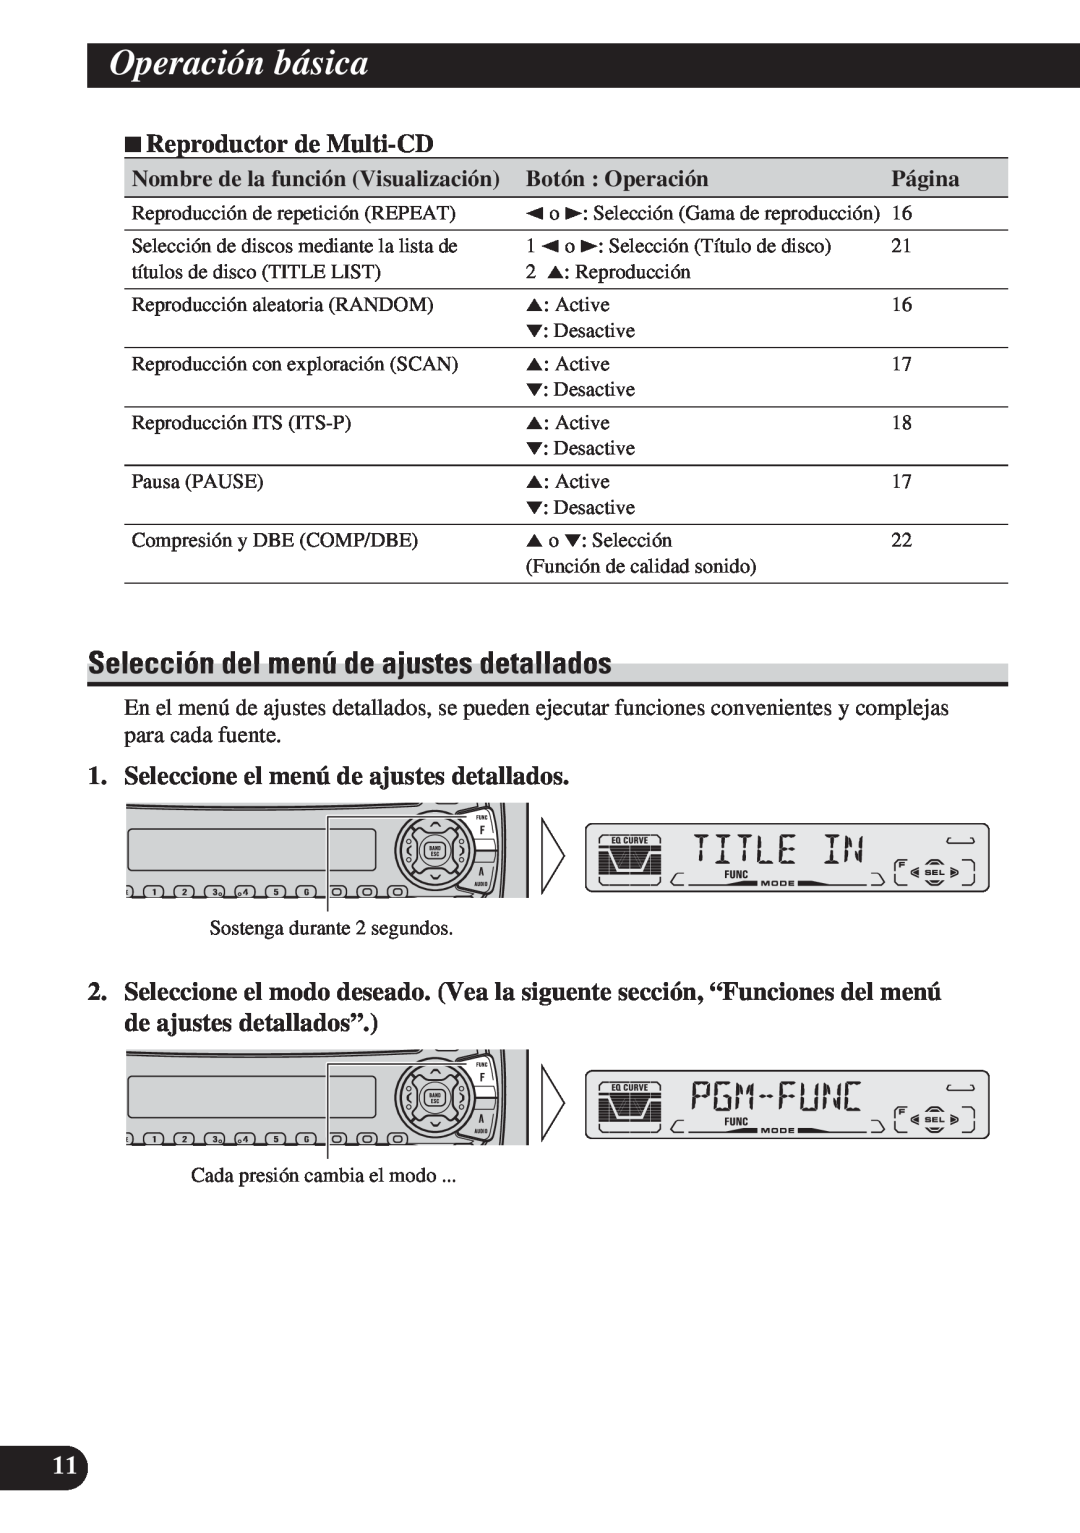 Pioneer DEH-P3150 Selección del menú de ajustes detallados, 7Reproductor de Multi-CD, Operación básica, Botón : Operación 